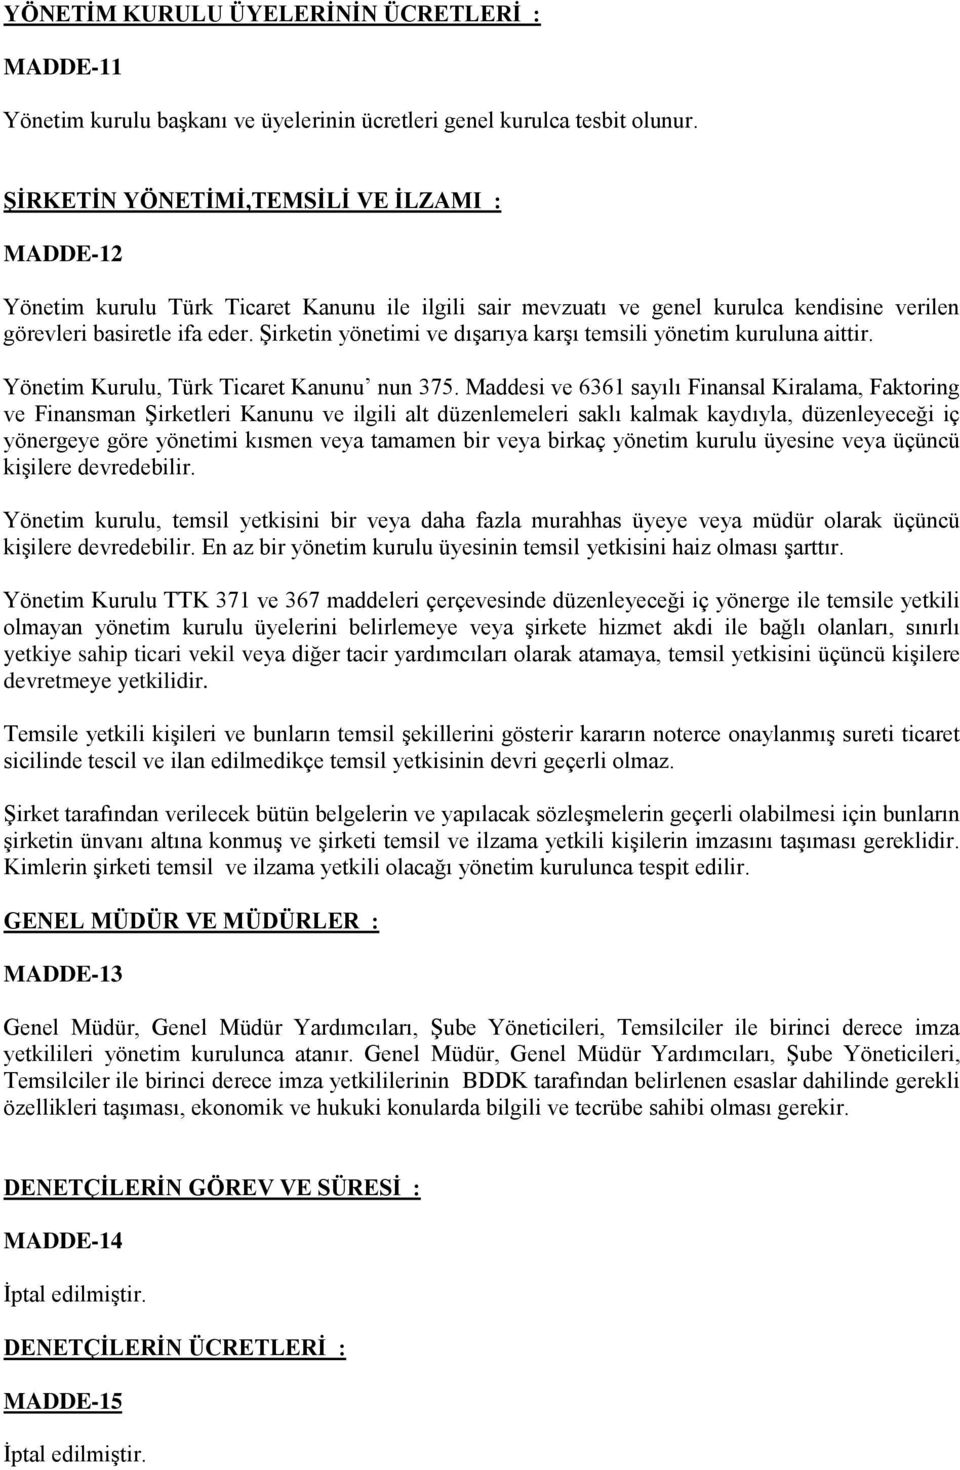 Şirketin yönetimi ve dışarıya karşı temsili yönetim kuruluna aittir. Yönetim Kurulu, Türk Ticaret Kanunu nun 375.